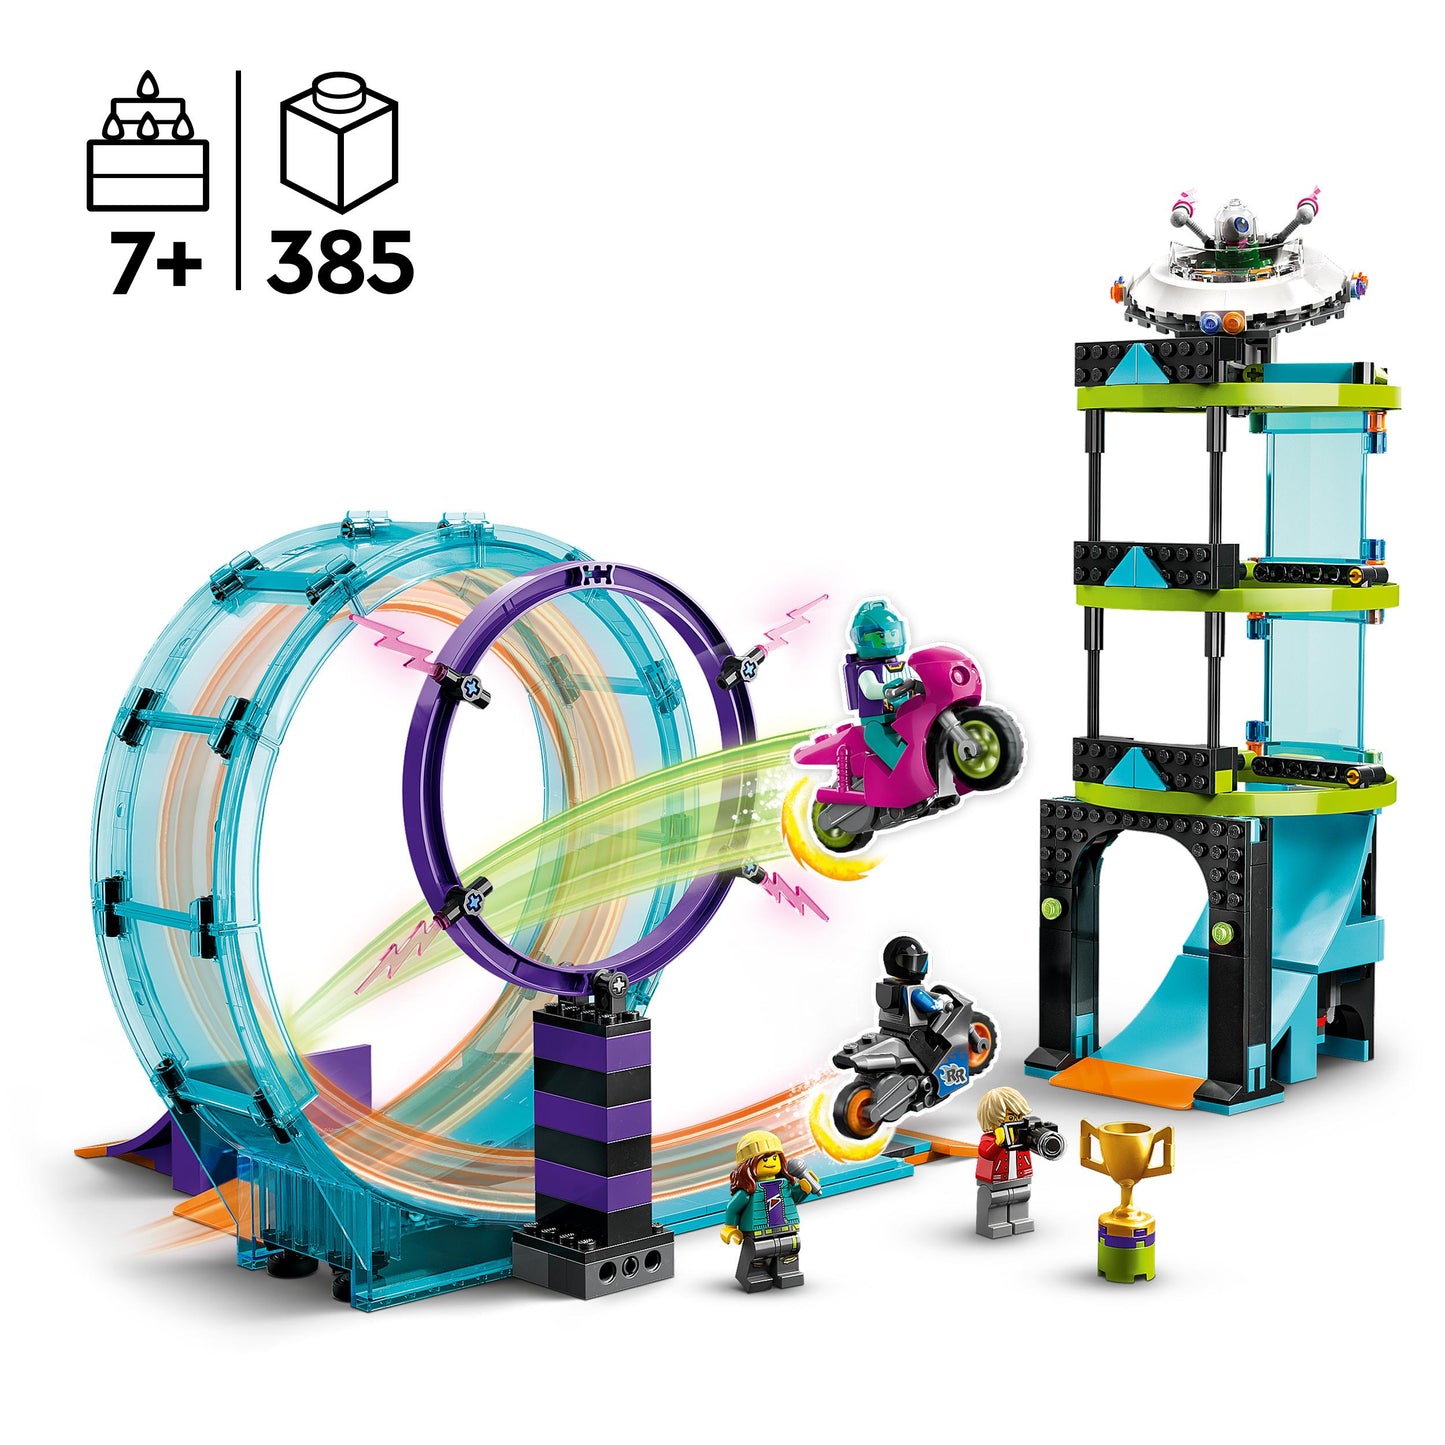 60361 LEGO City - Stunt Riders: sfida impossibile